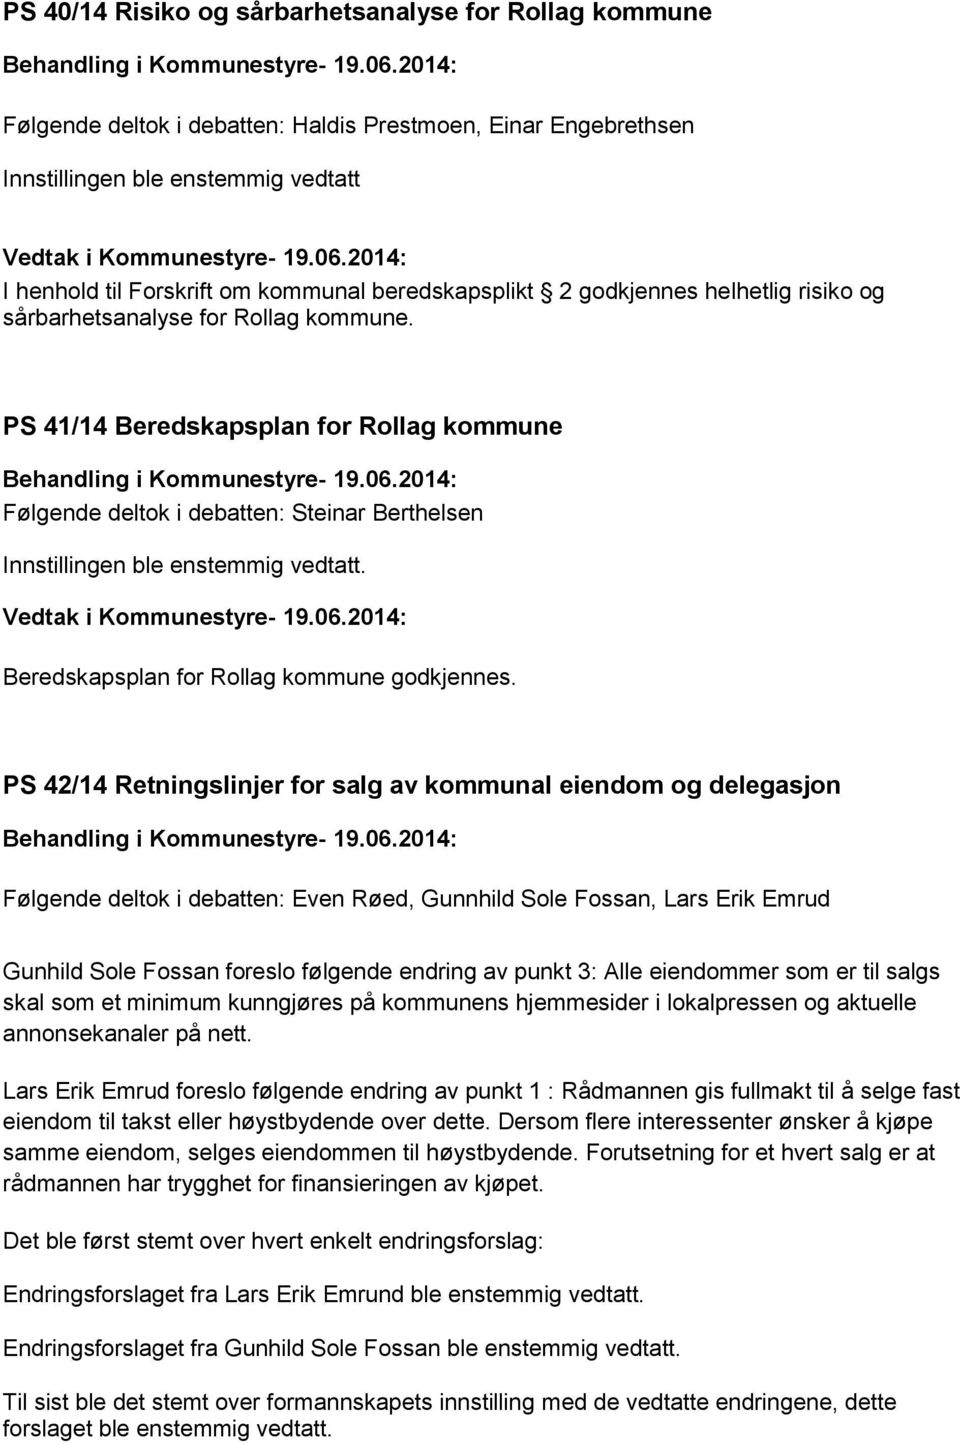 PS 41/14 Beredskapsplan for Rollag kommune Følgende deltok i debatten: Steinar Berthelsen Beredskapsplan for Rollag kommune godkjennes.